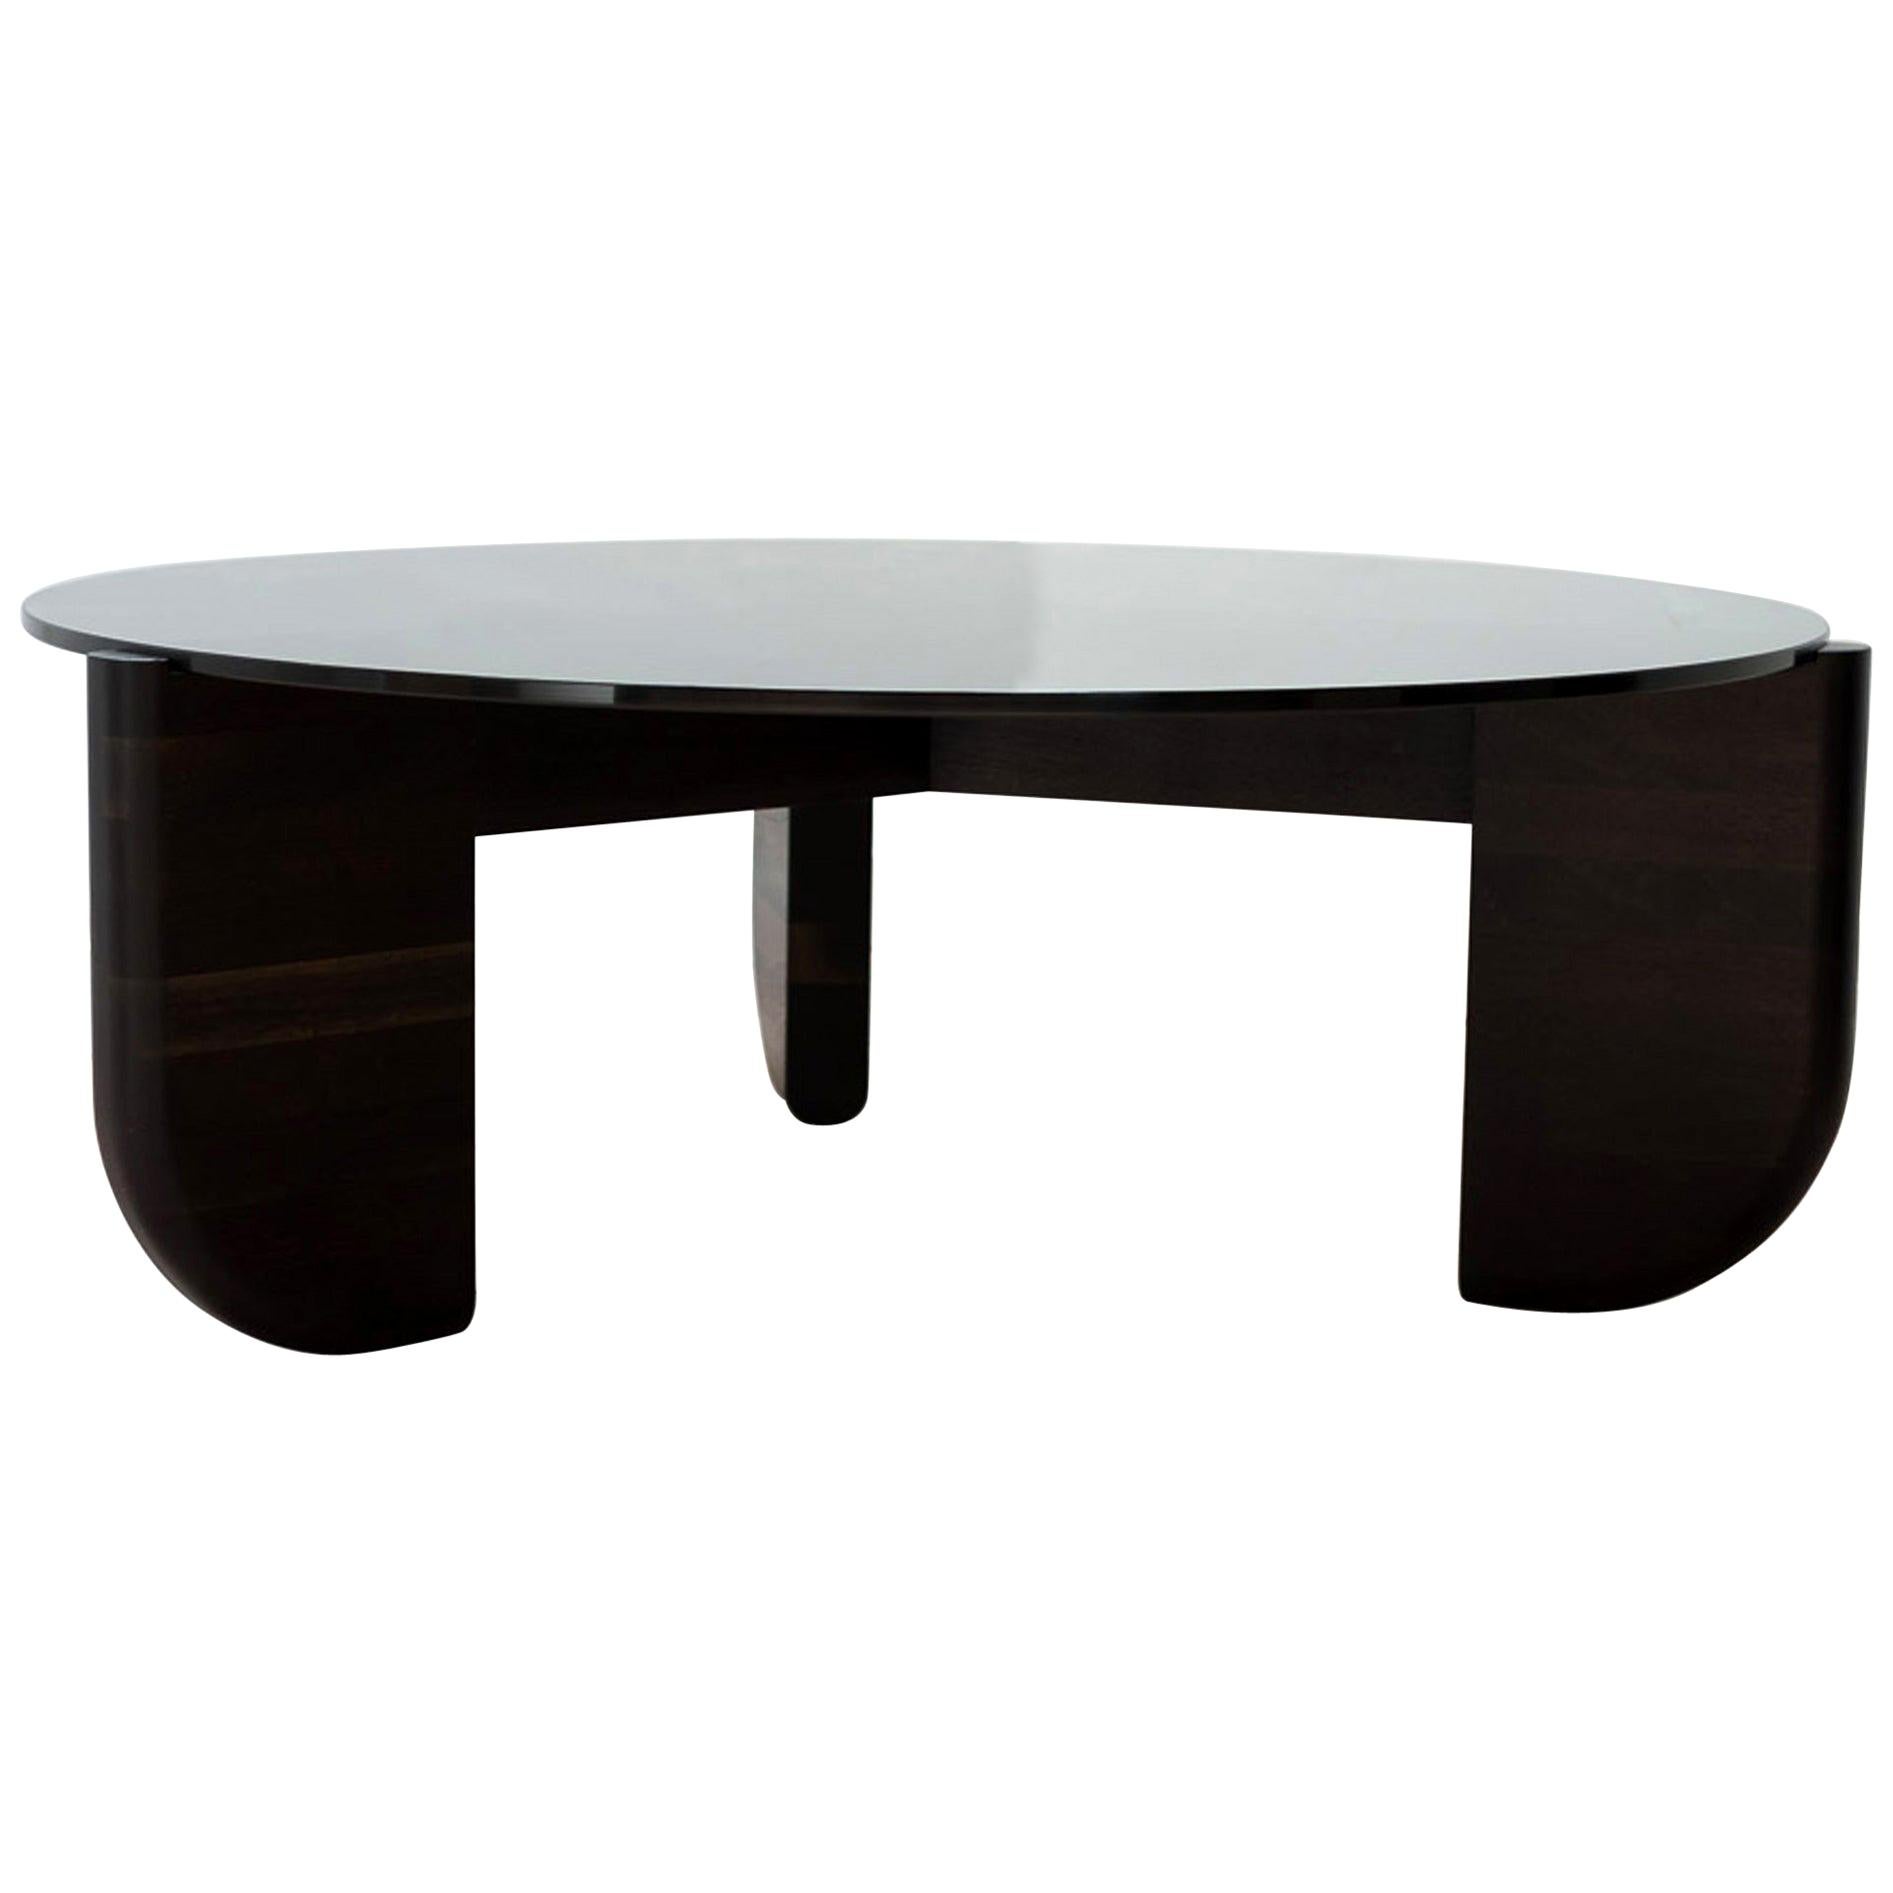 Round Tripod Coffee Table in Oxidized Black Walnut and Gray Glass